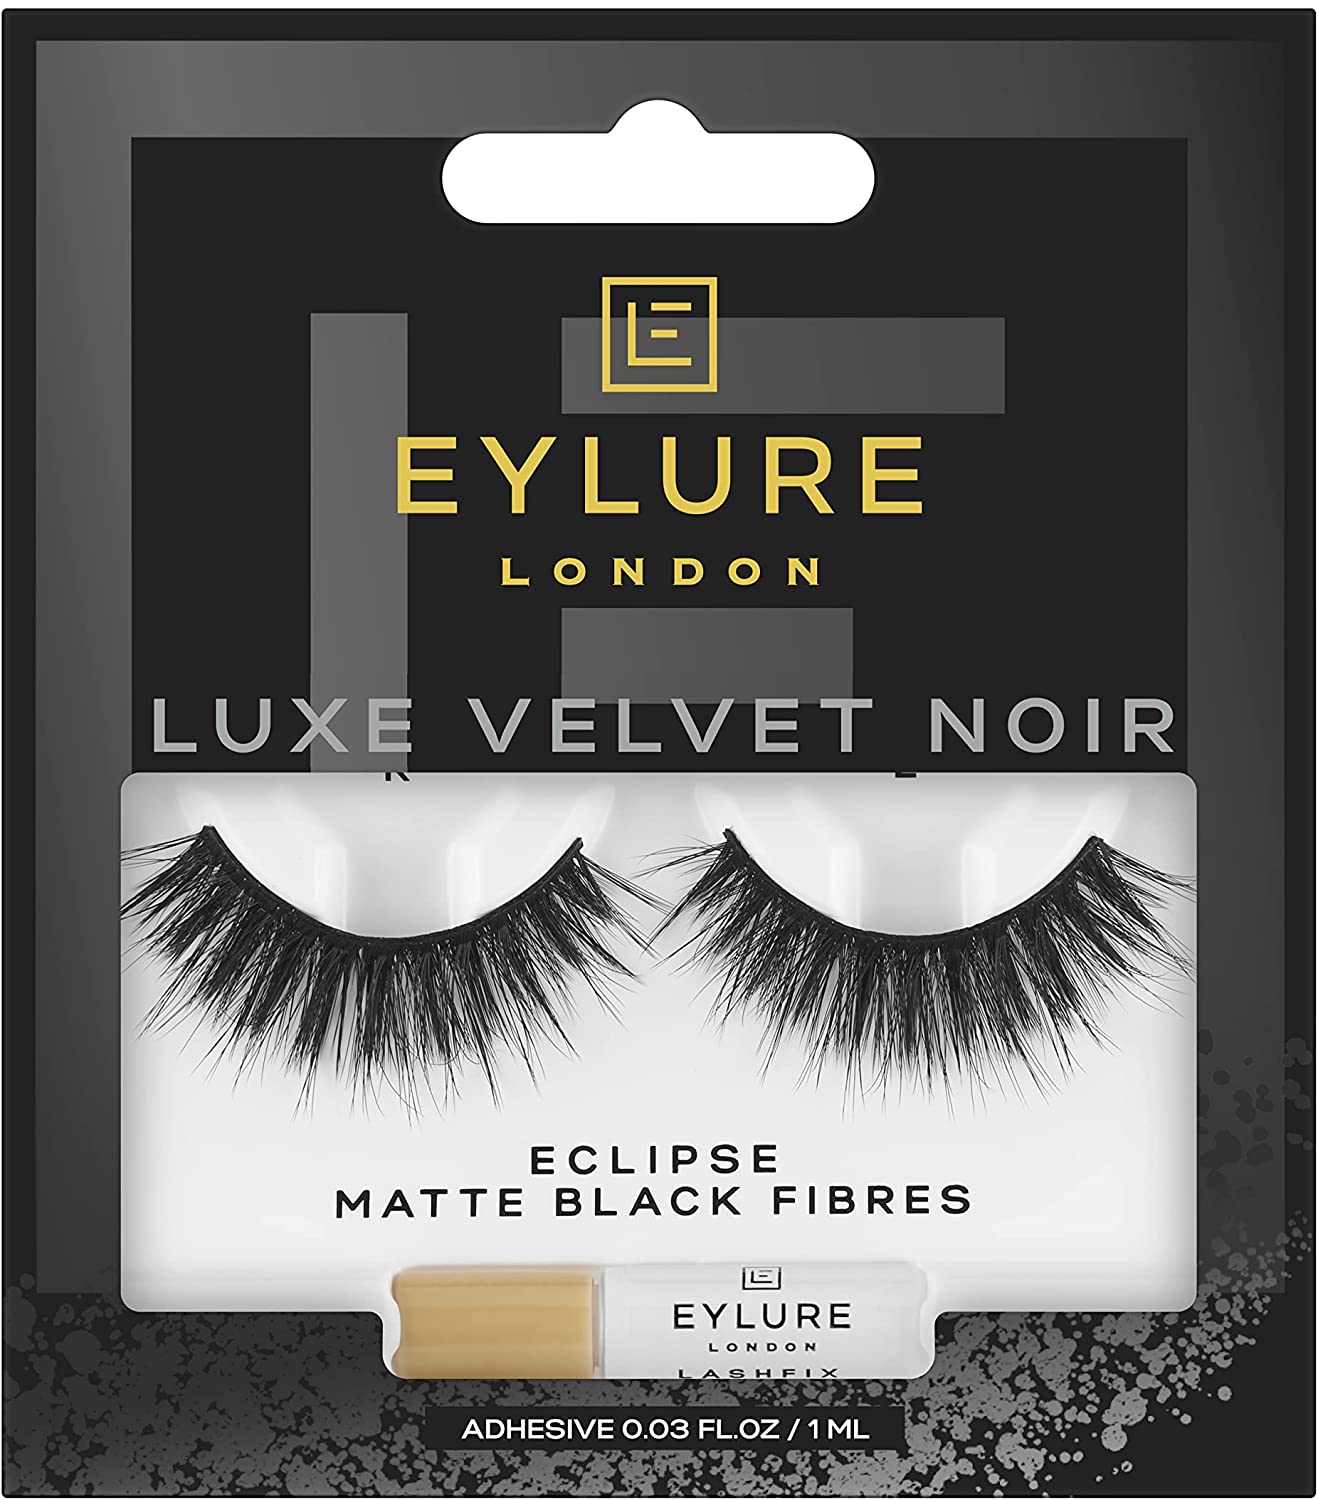 Eylure Luxe Velvet Noir Lashes with Matte Black Fibres - Eclipse